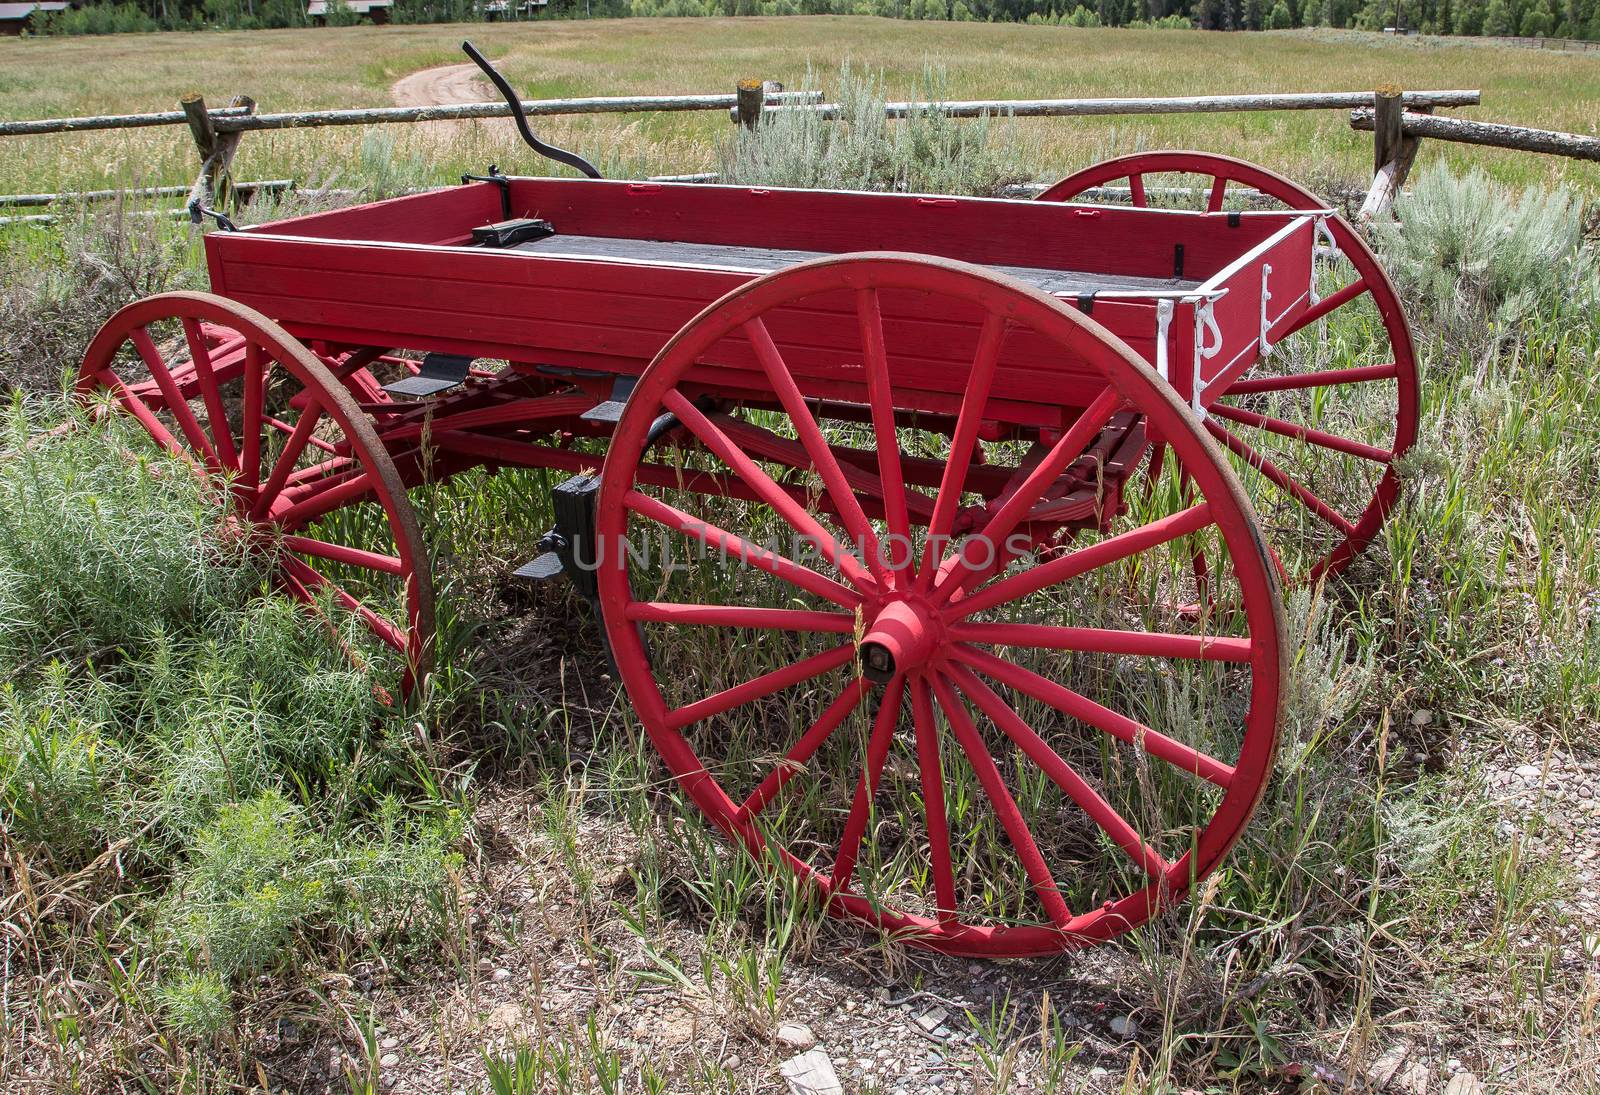 Red Wagon, Jackson Hole, Wyoming